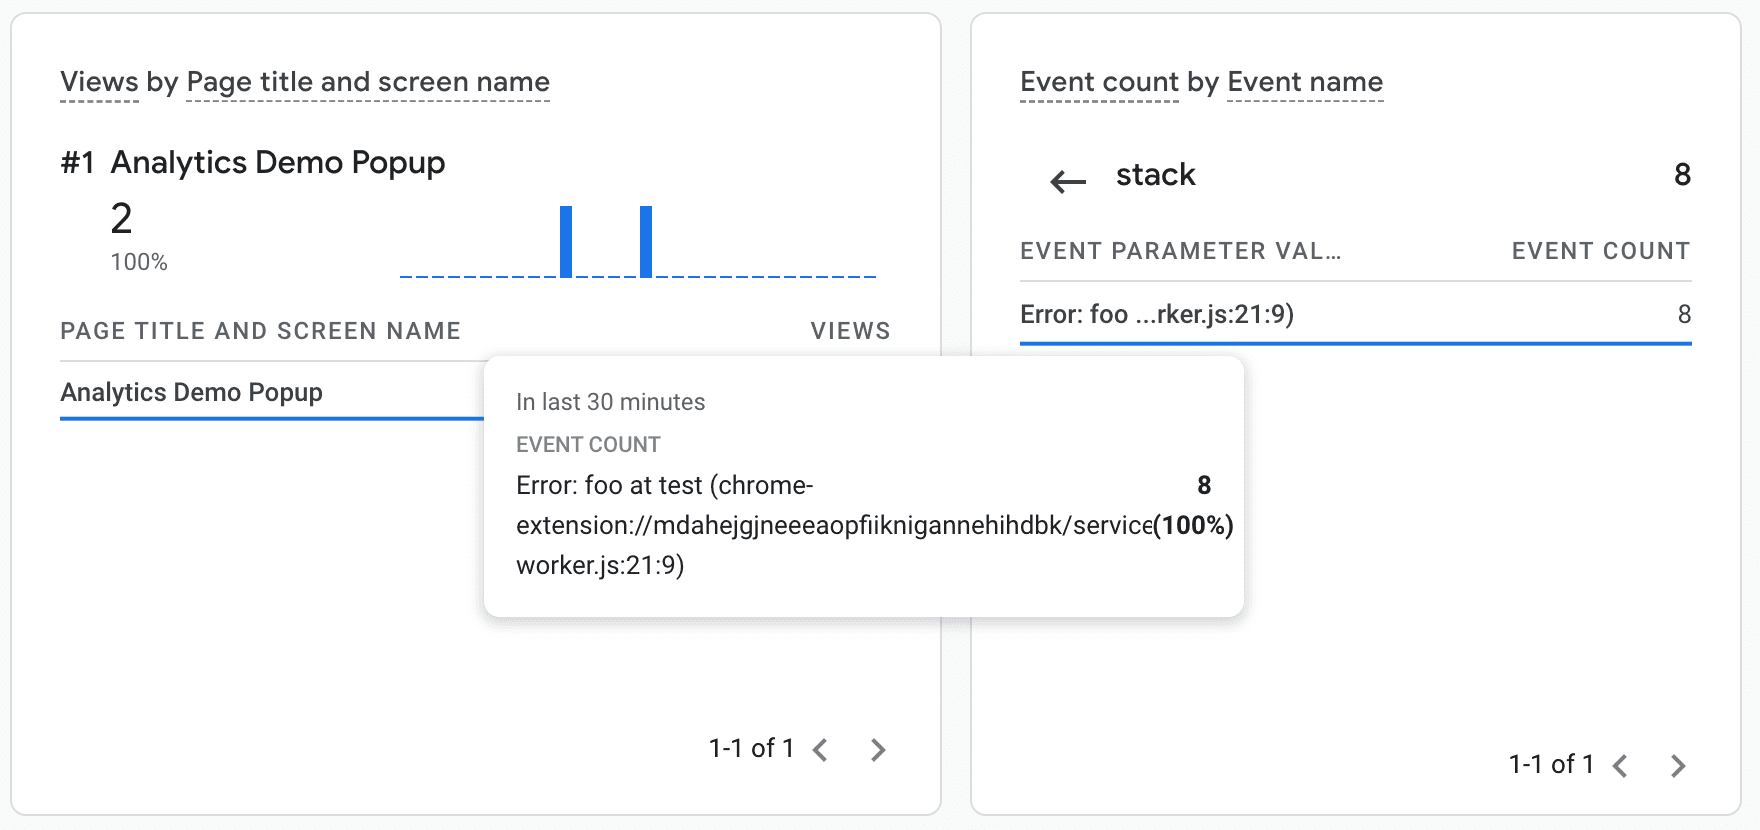 Evento de erro conforme exibido no painel de eventos do Google Analytics.